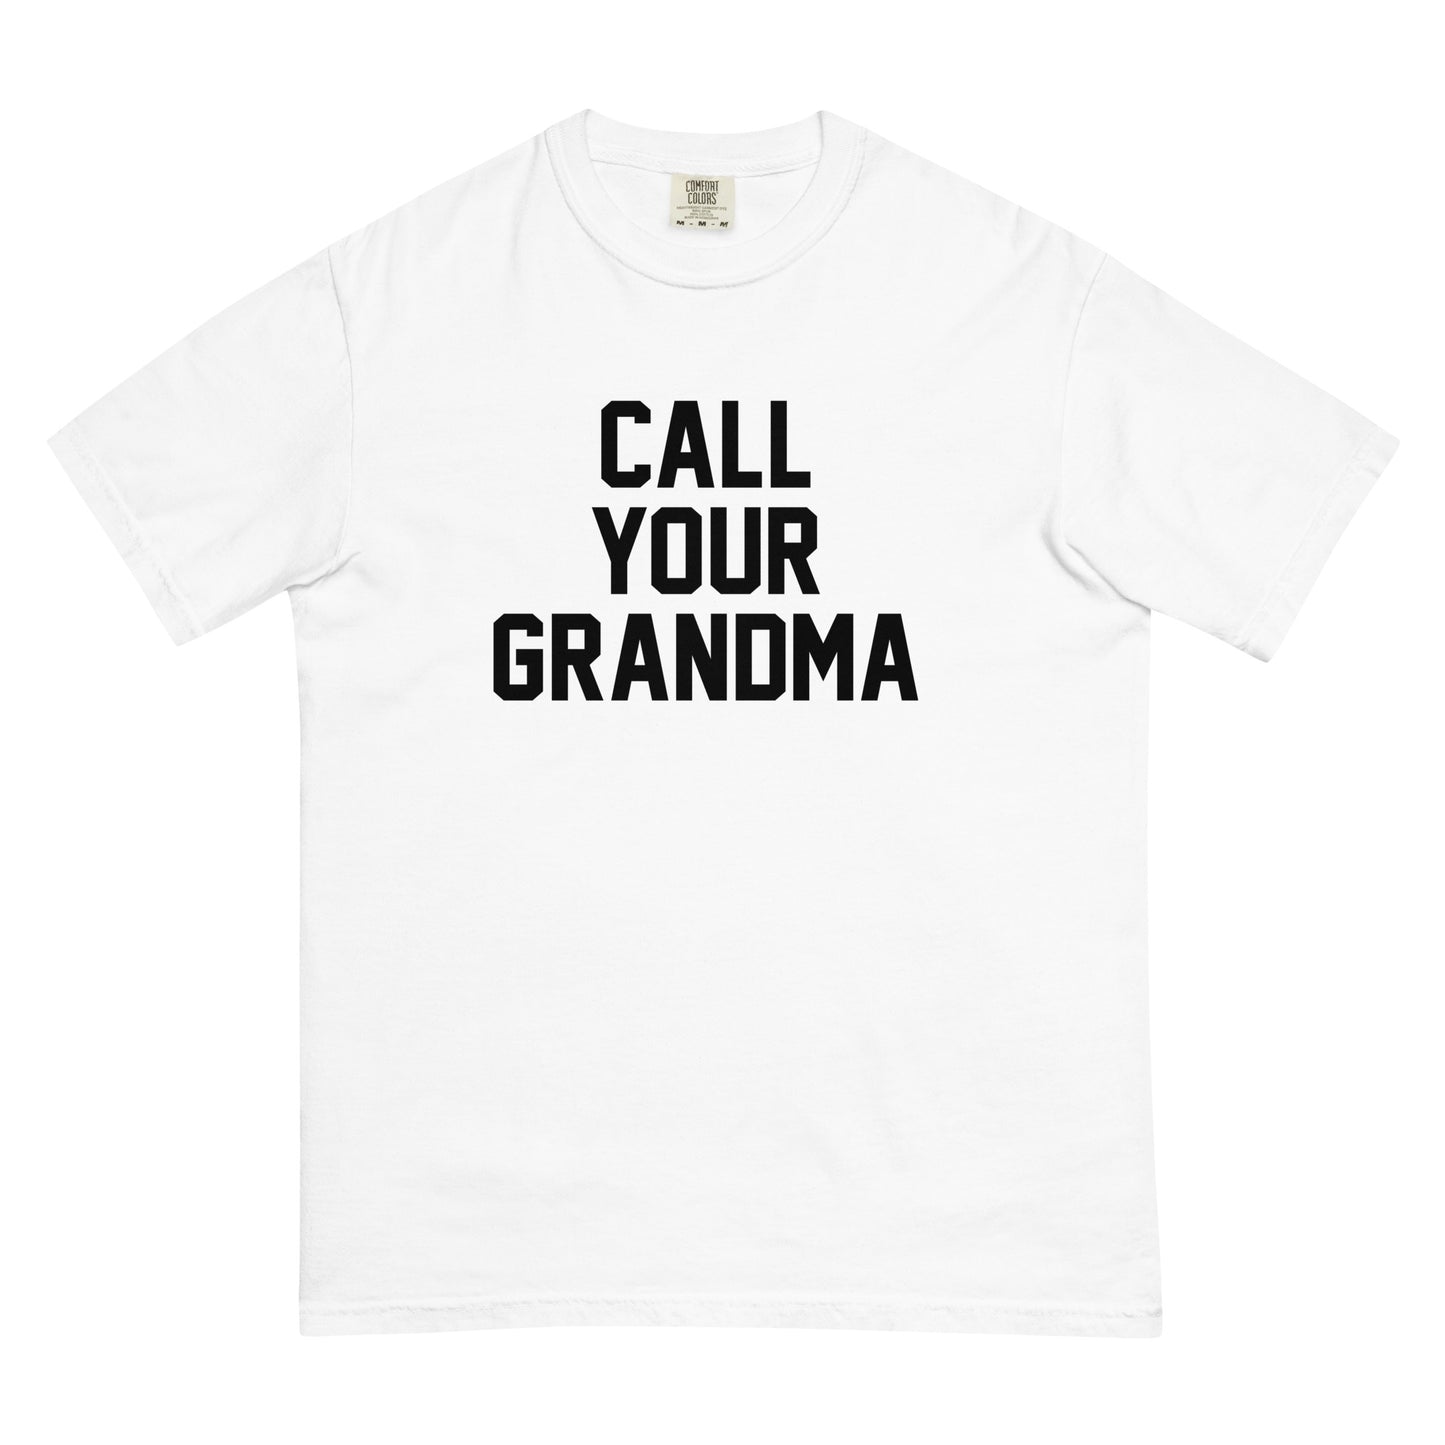 CALL YOUR GRANDMA